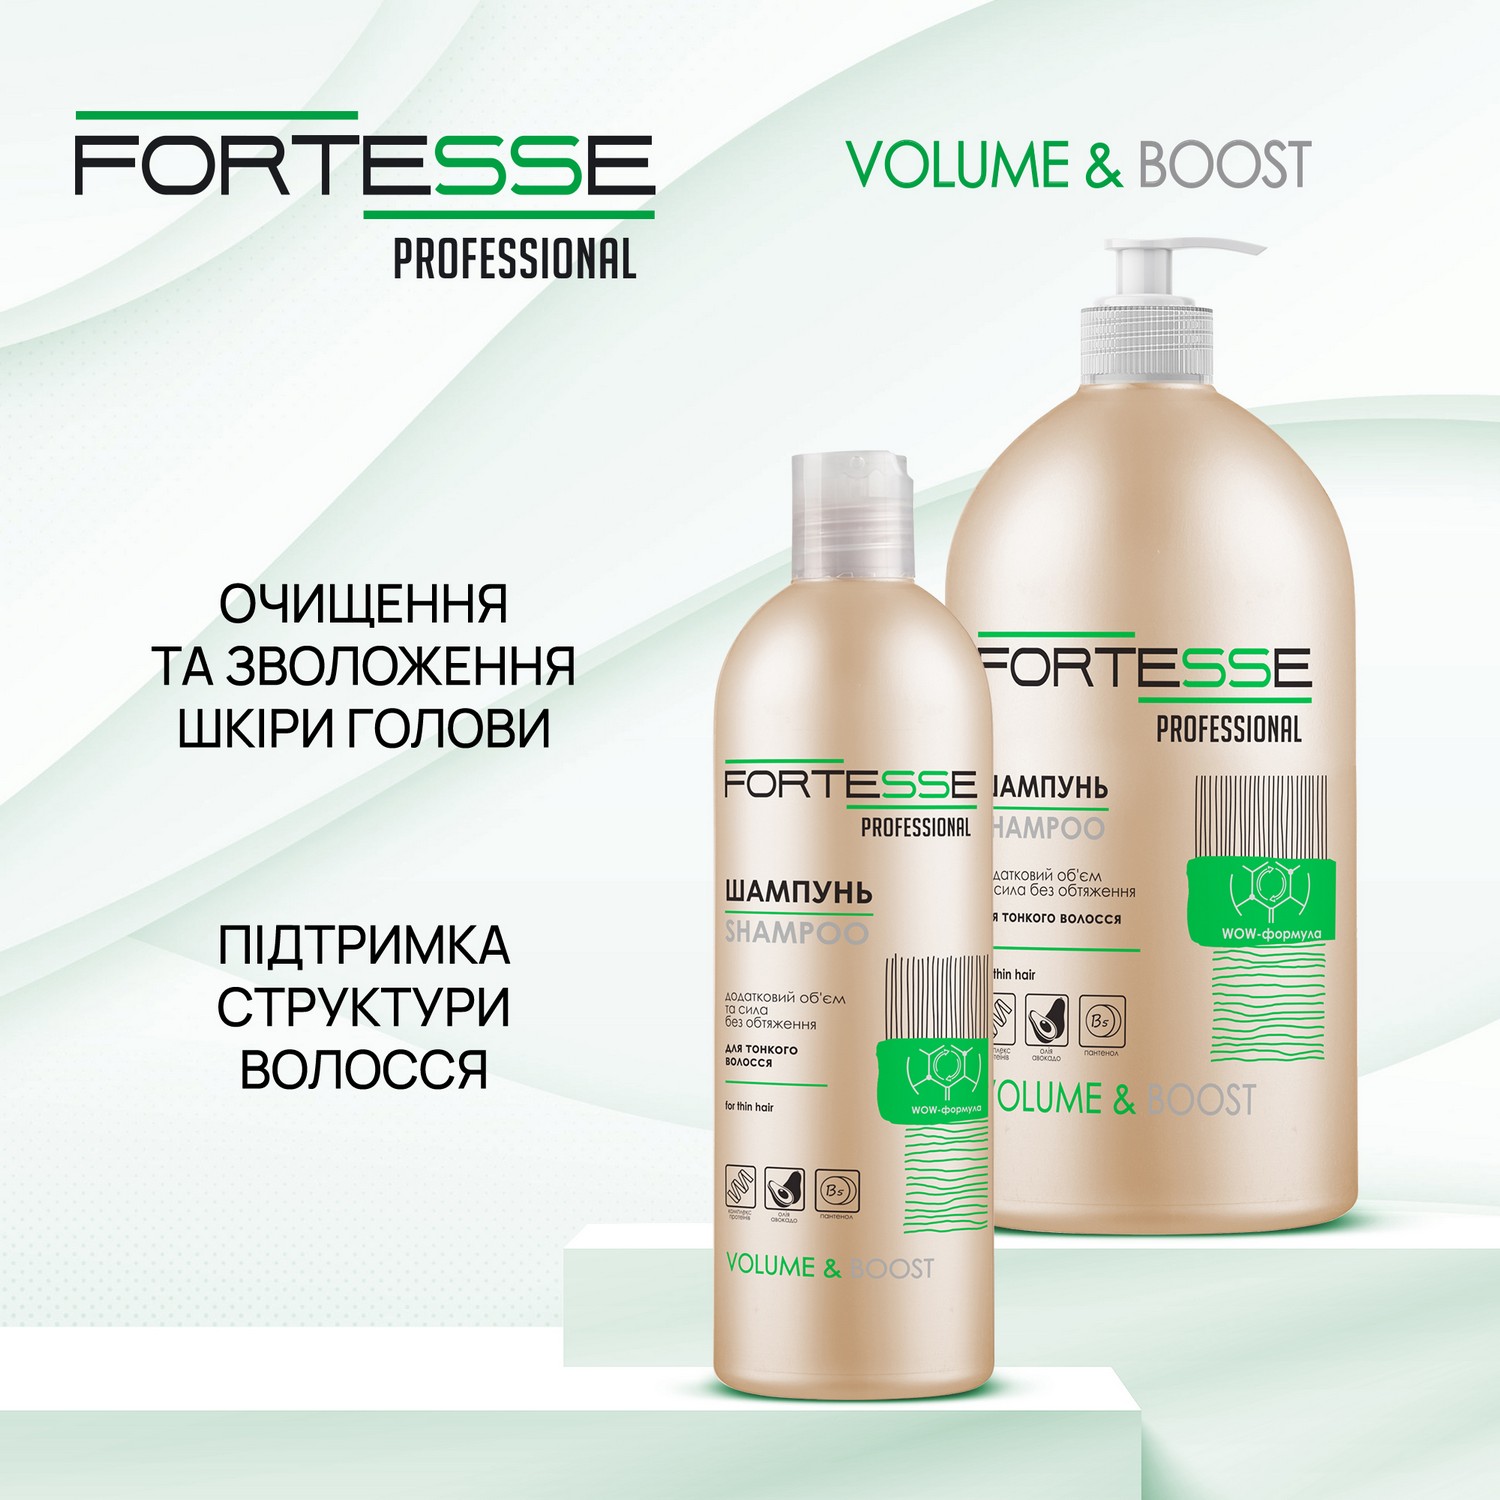 Шампунь Fortesse Professional Volume & Boost Об'єм, для тонкого волосся, 400 мл - фото 3